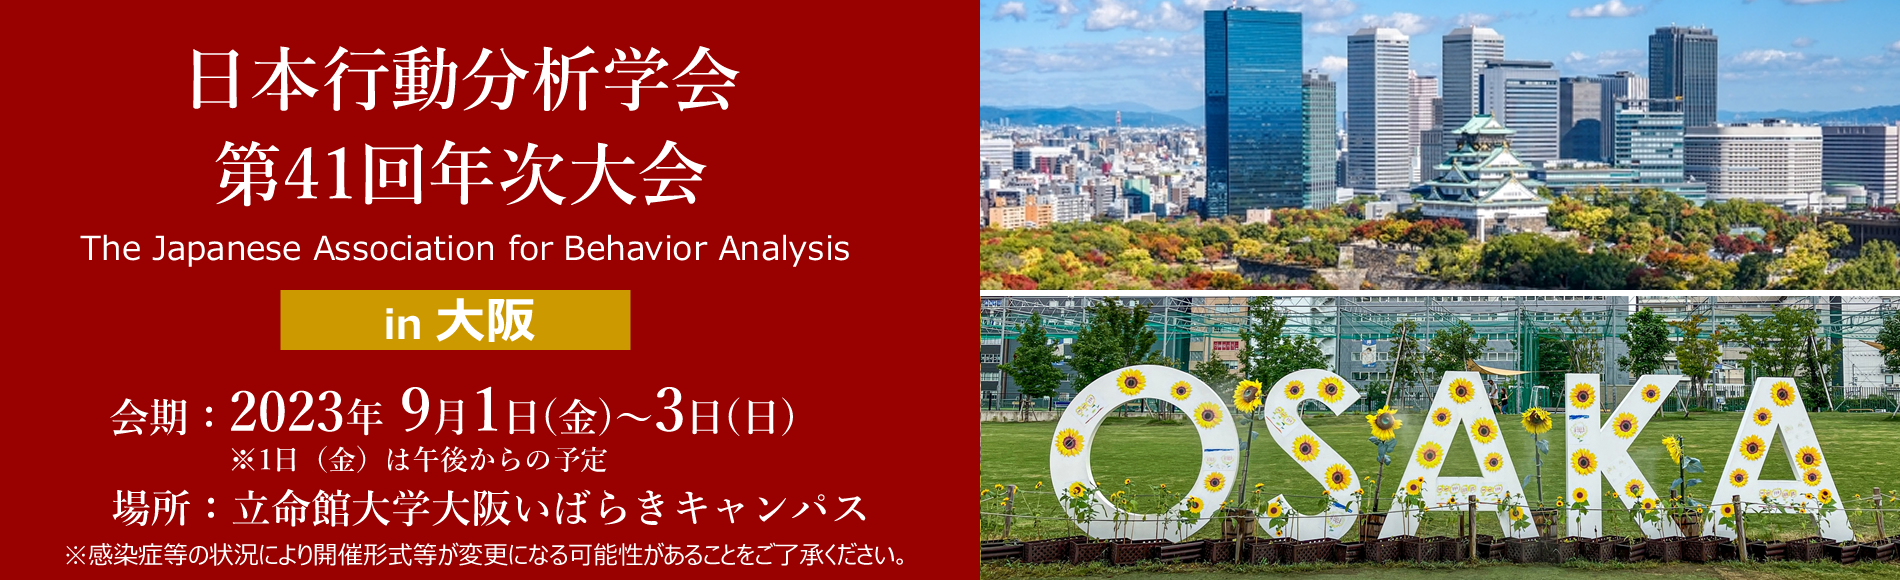 日本行動分析学会 第41回年次大会